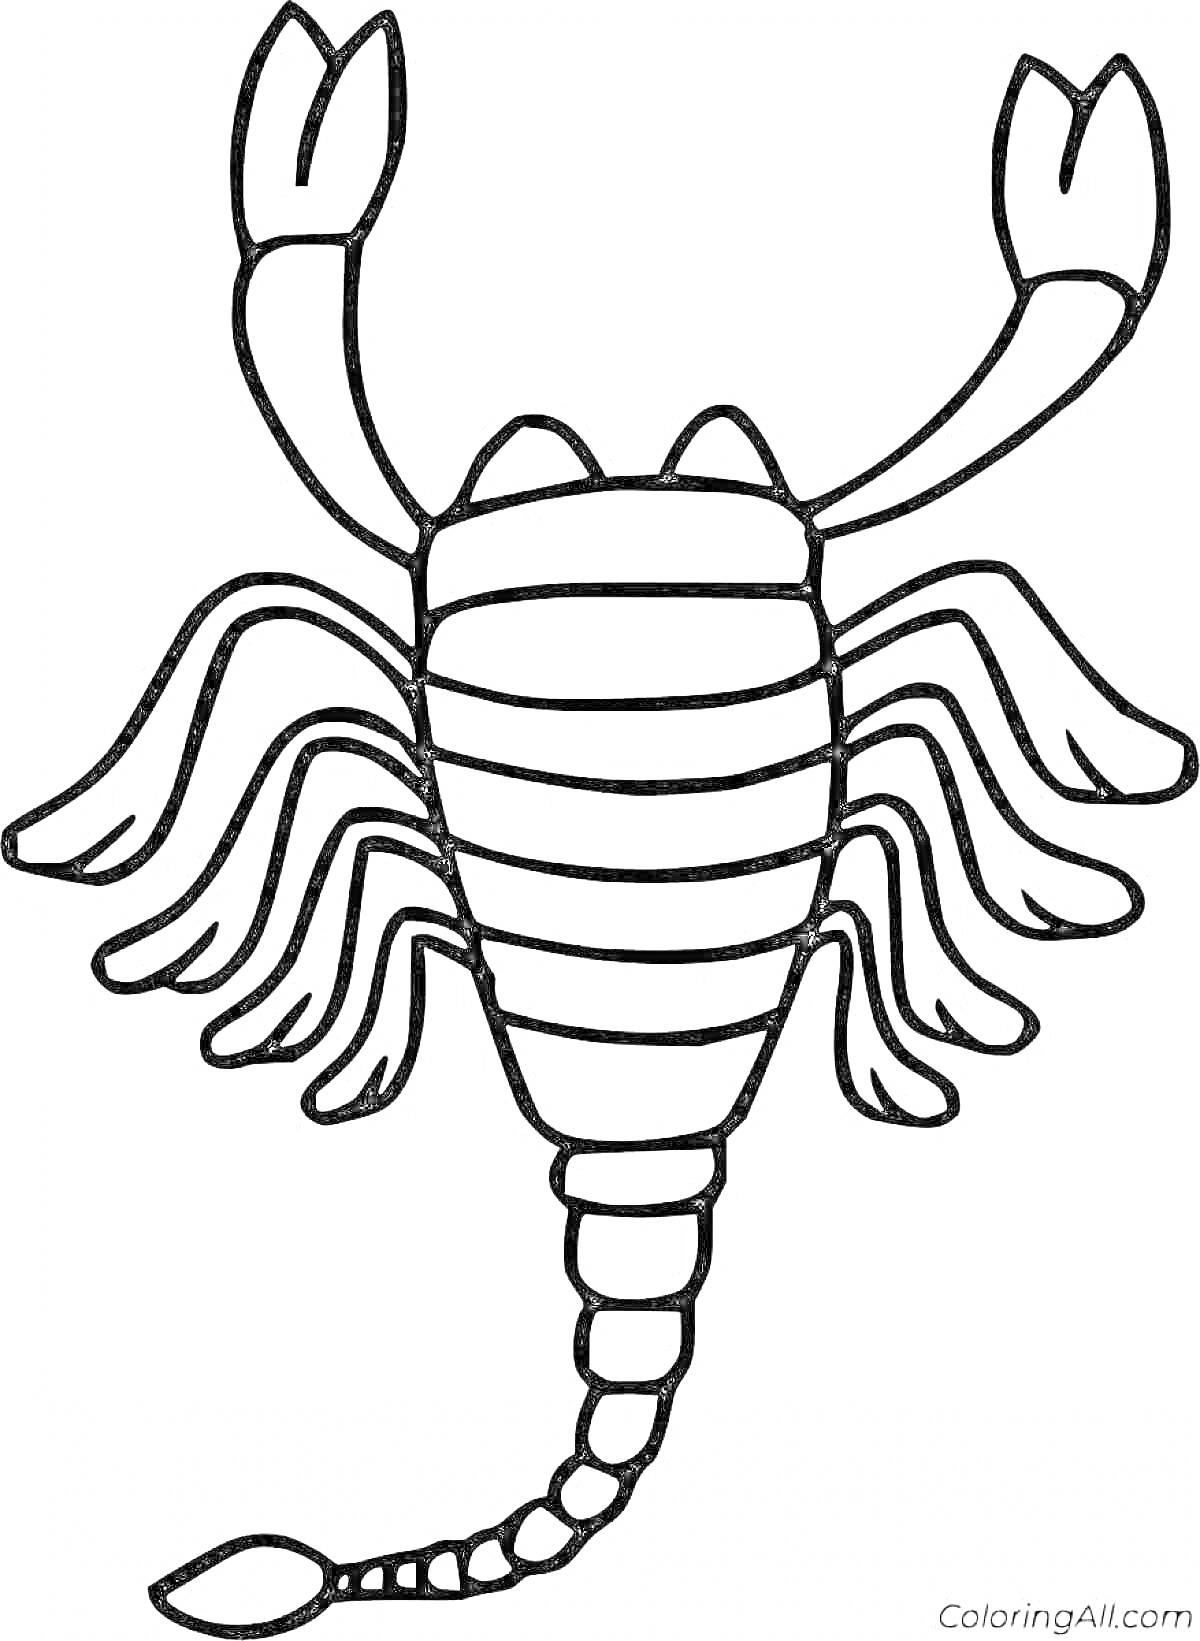 Раскраска Скорпион с поднятыми клешнями и детализированным хвостом